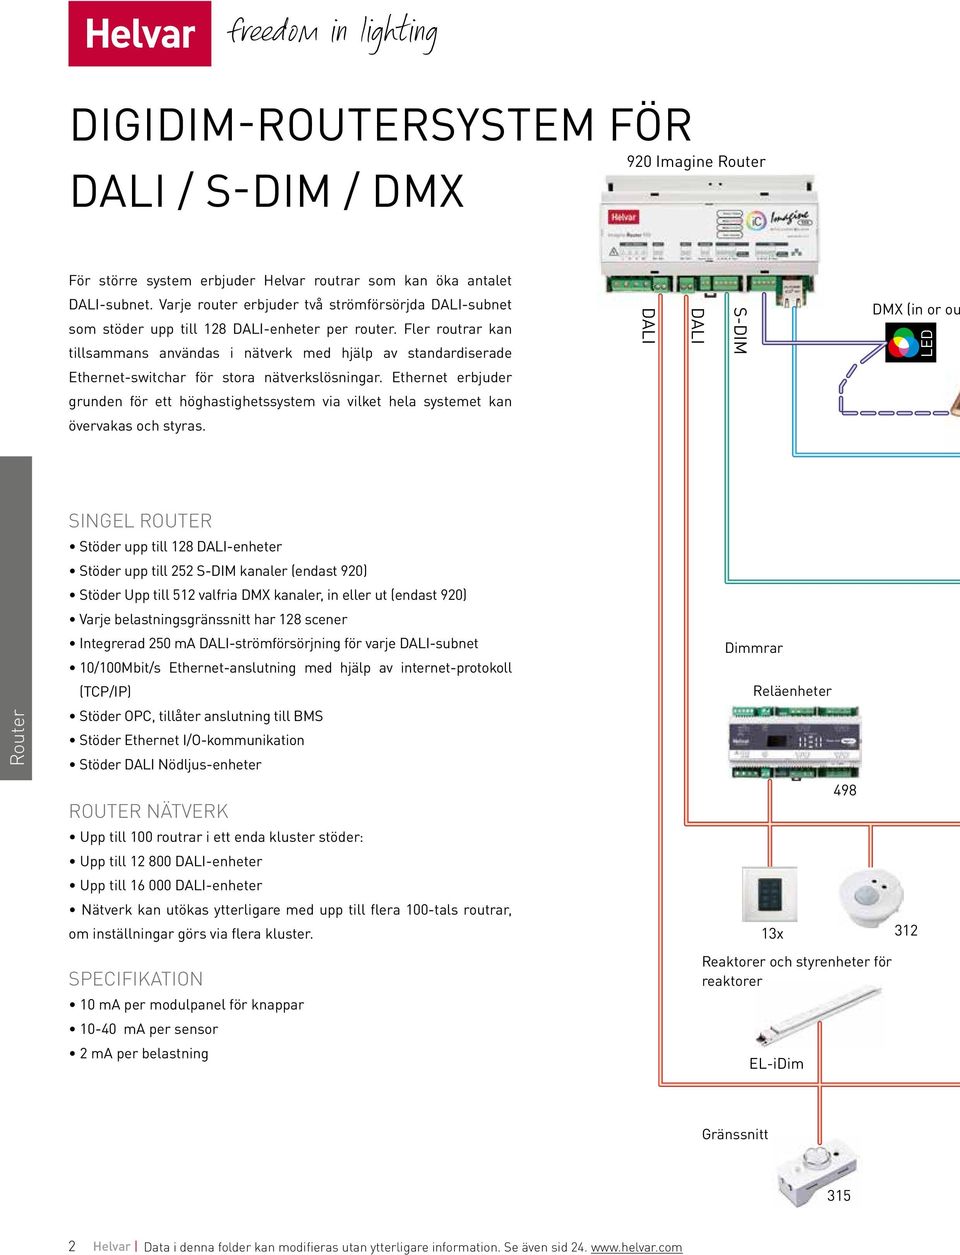 Fler routrar kan tillsammans användas i nätverk med hjälp av standardiserade DALI DALI S-DIM DMX (in or ou LED Ethernet-switchar för stora nätverkslösningar.